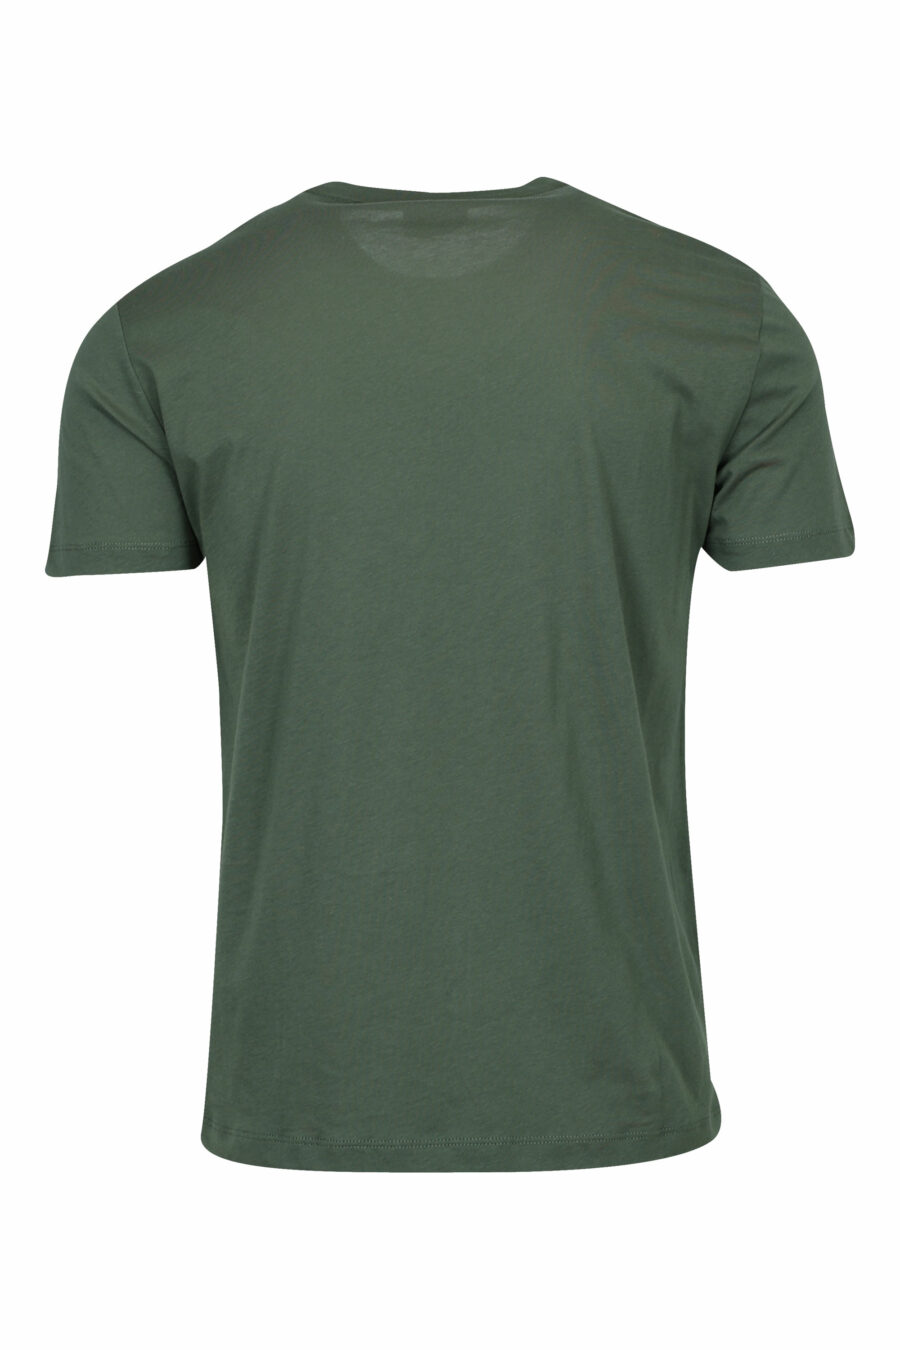 Camiseta verde con minilogo "lux identity" negro en placa dorada - 8058947475506 1